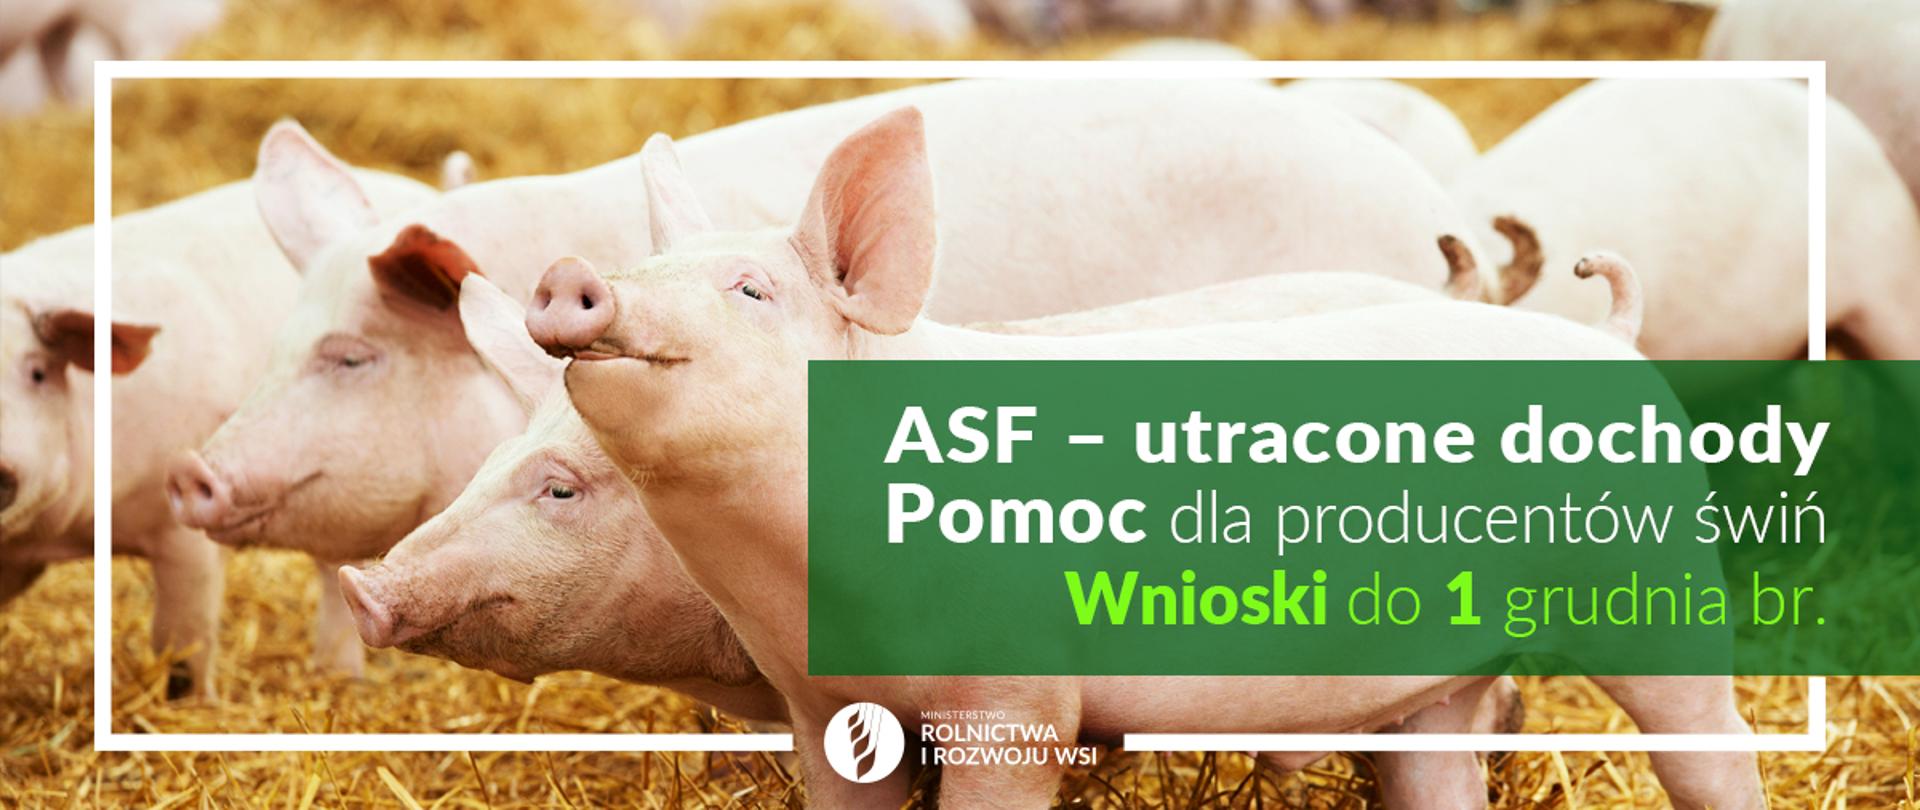 Grafika do komunikatu "Pomoc dla producentów świń na wyrównanie utraconych dochodów w związku z ASF ".
Trzoda chlewna.